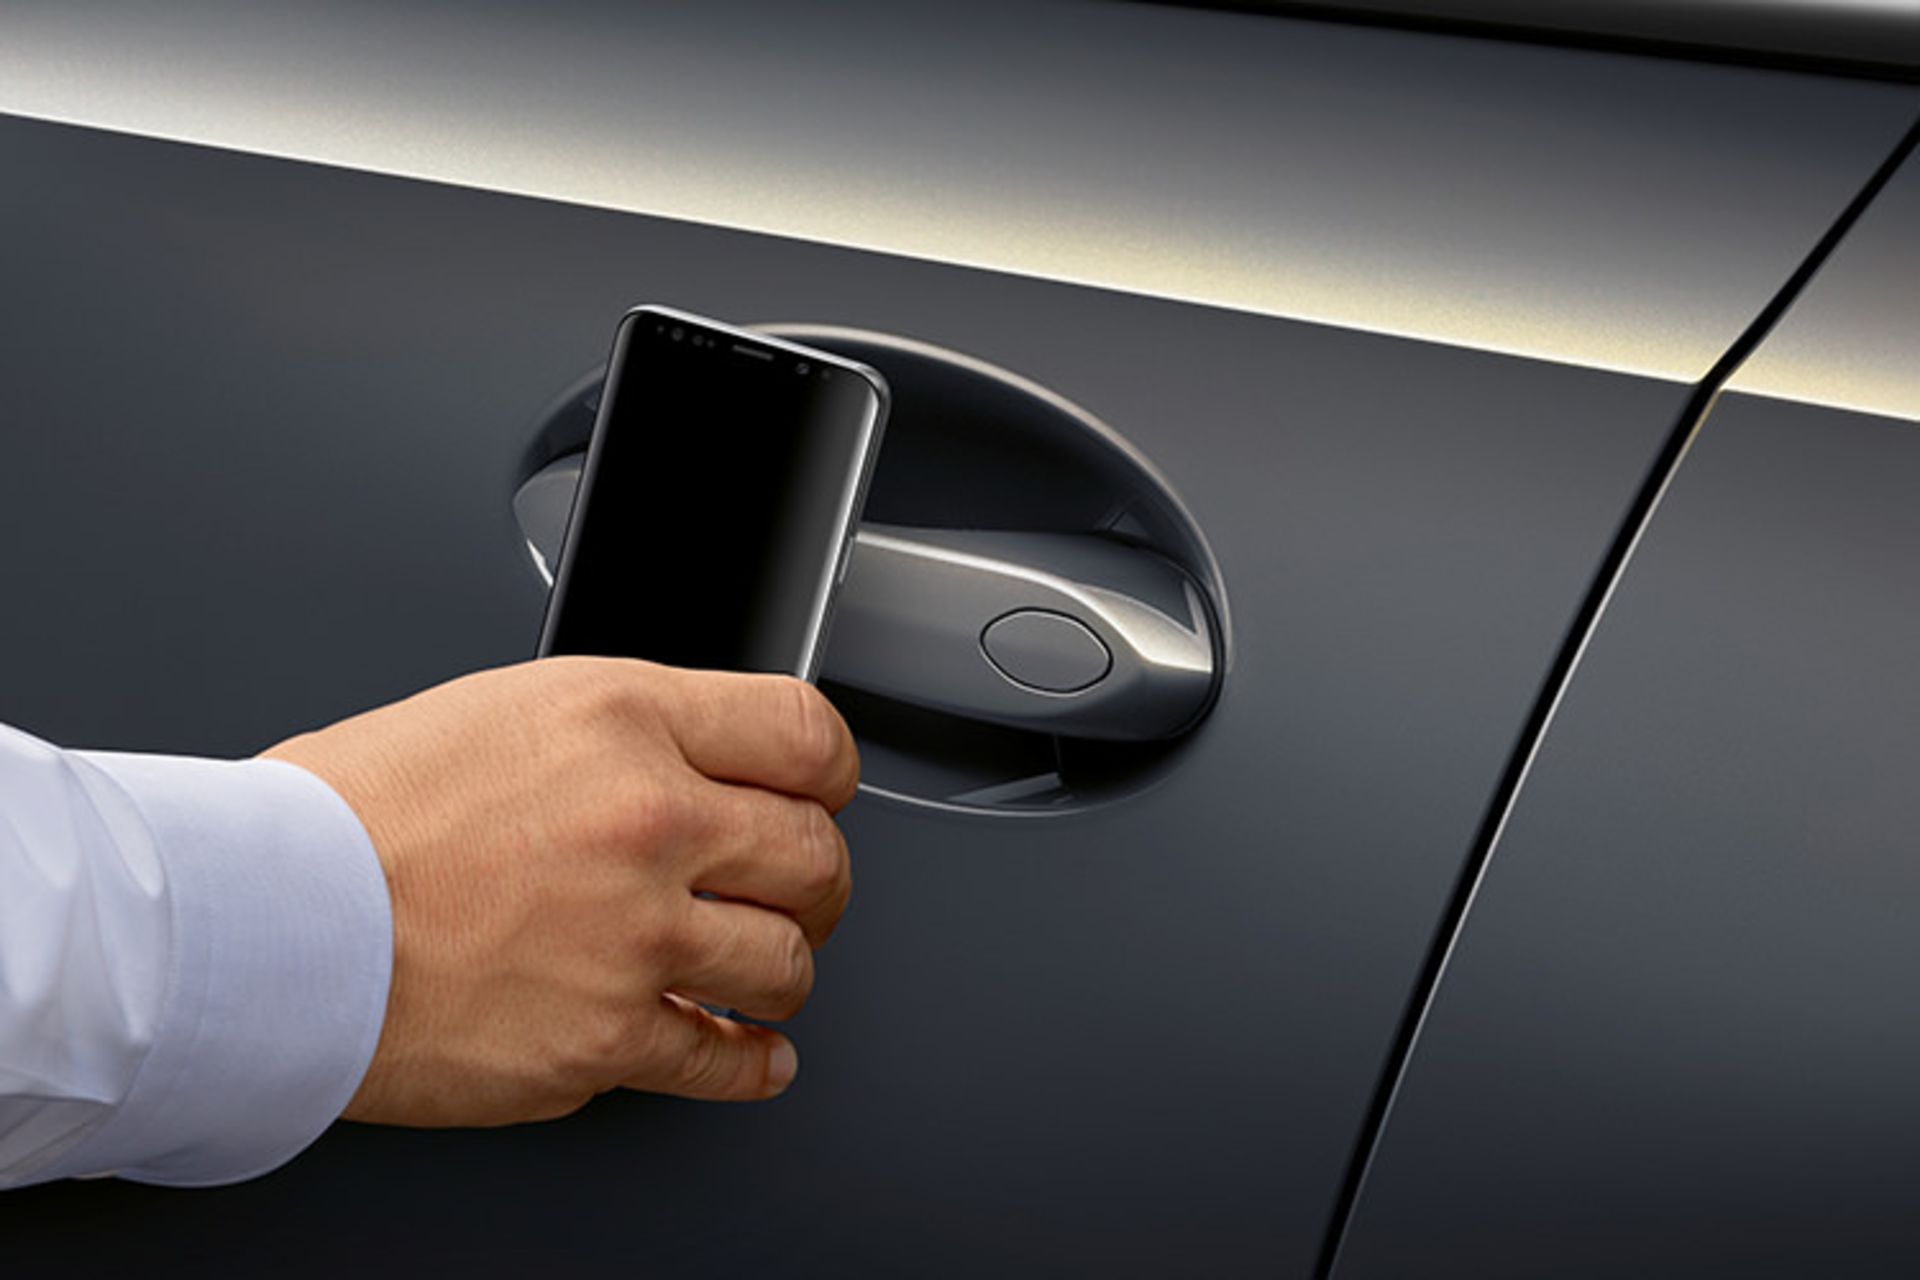 مرجع متخصصين ايران BMW Digital Key / كليد ديجيتال بي ام و